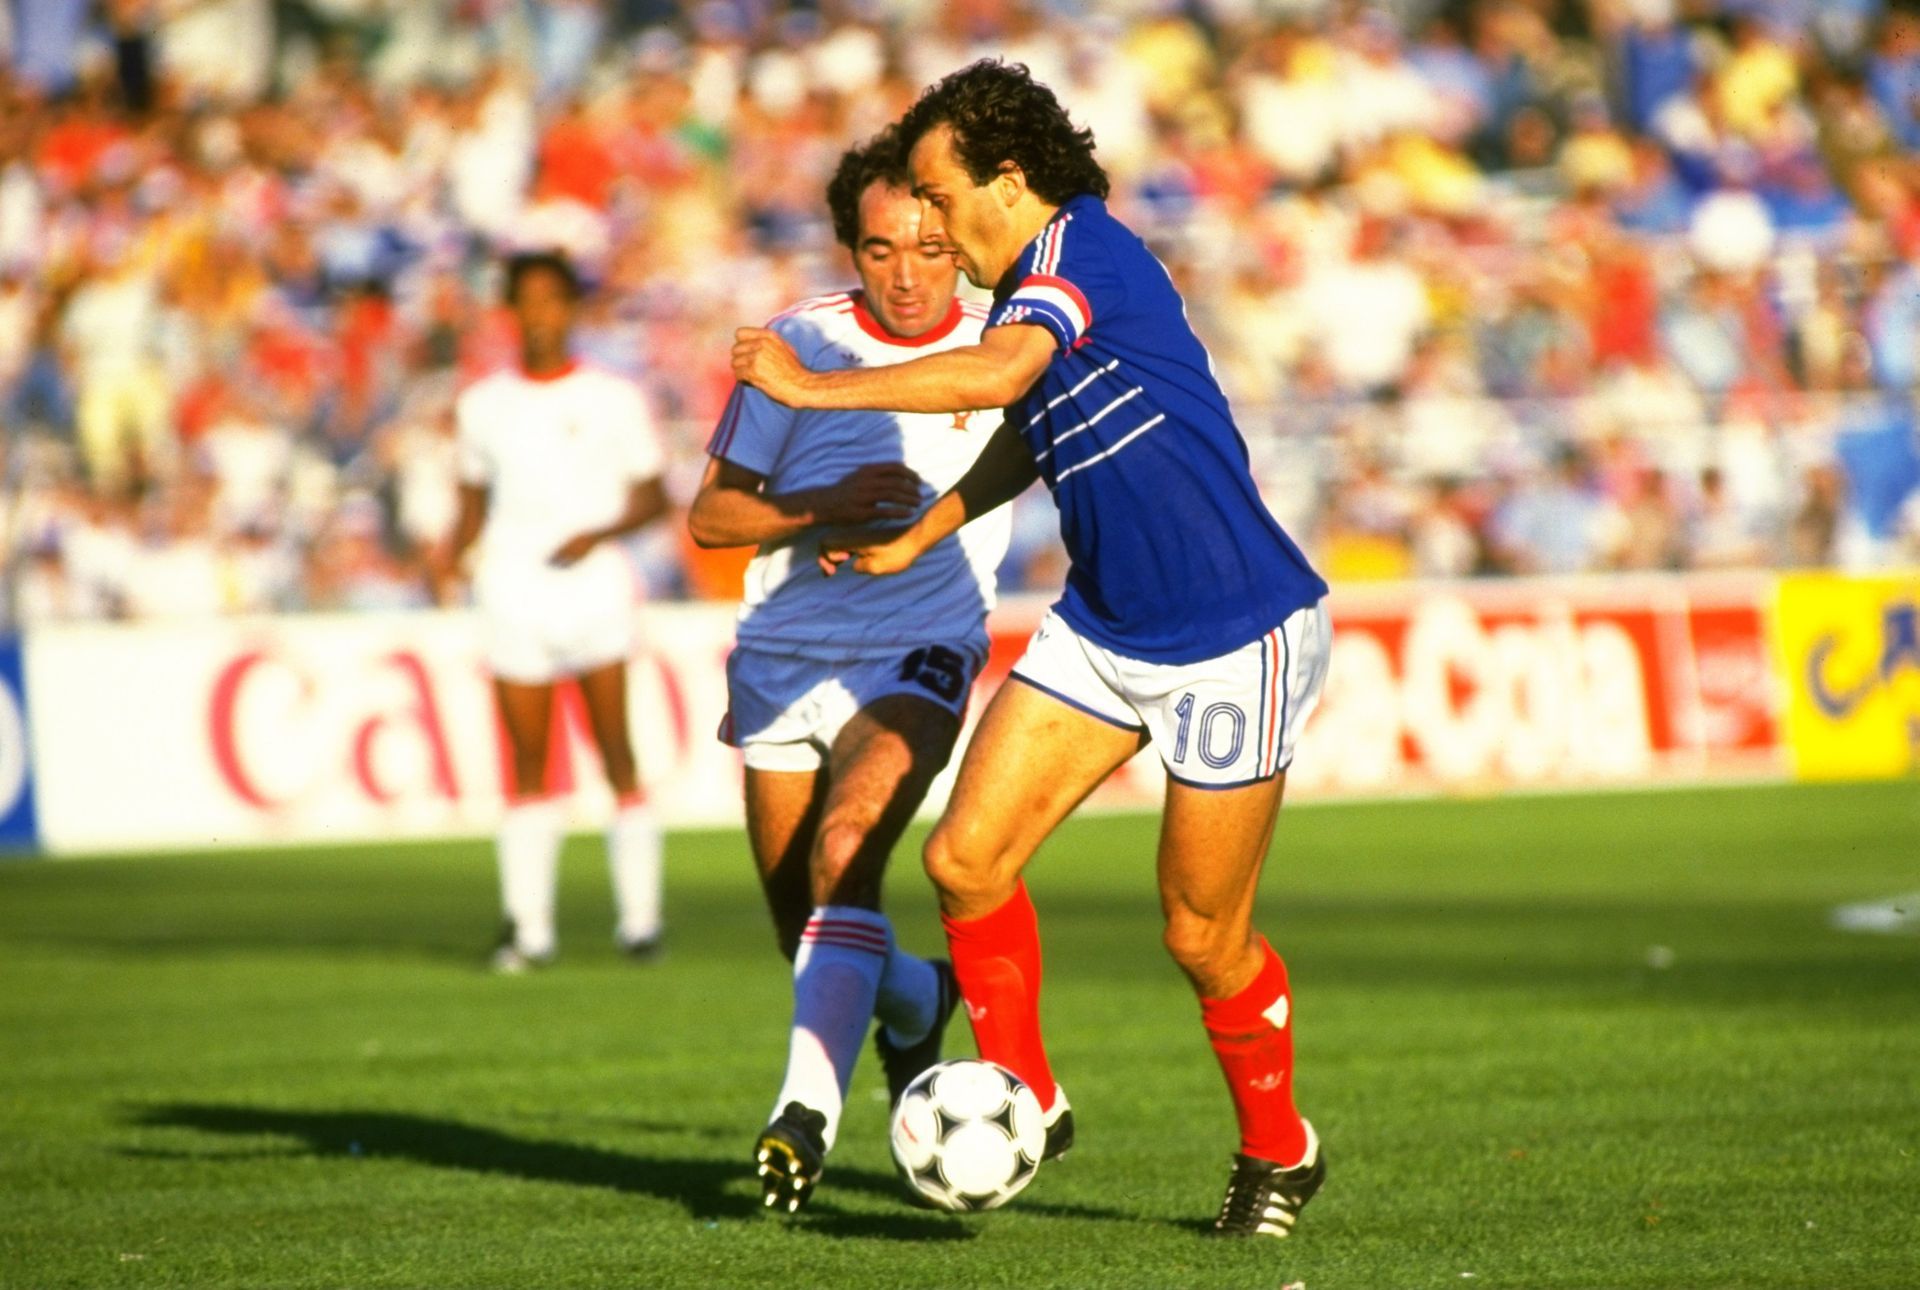 Един от гигантите на 80-те, а и въобще в историята на играта - Мишел Платини. Герой от Евро 1984, но на първенствата през 1982 и 1986 г. не успява, отпадайки два пъти на полуфинал.